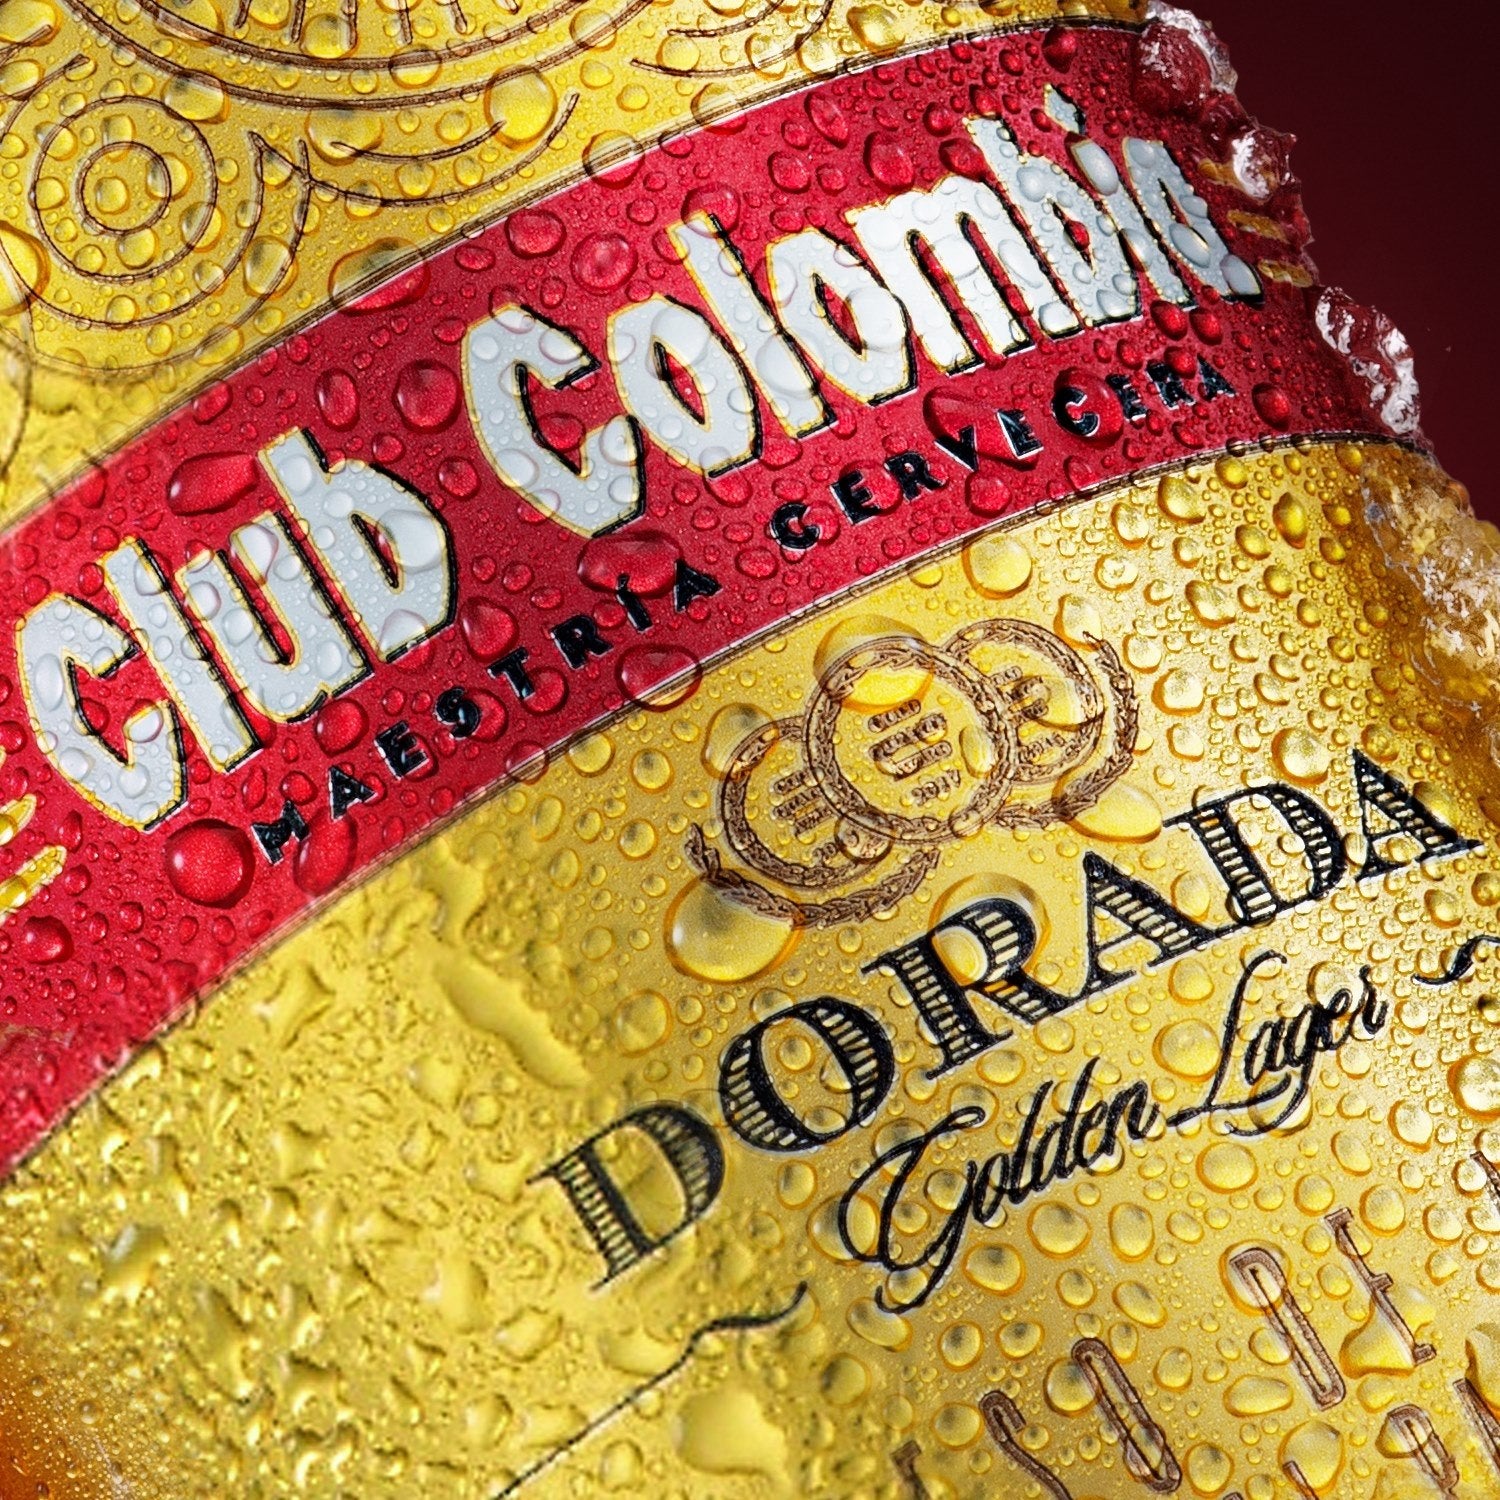 Club Columbia Dorada 0,33l- Lager aus Kolumbien mit 4,6% Vol.